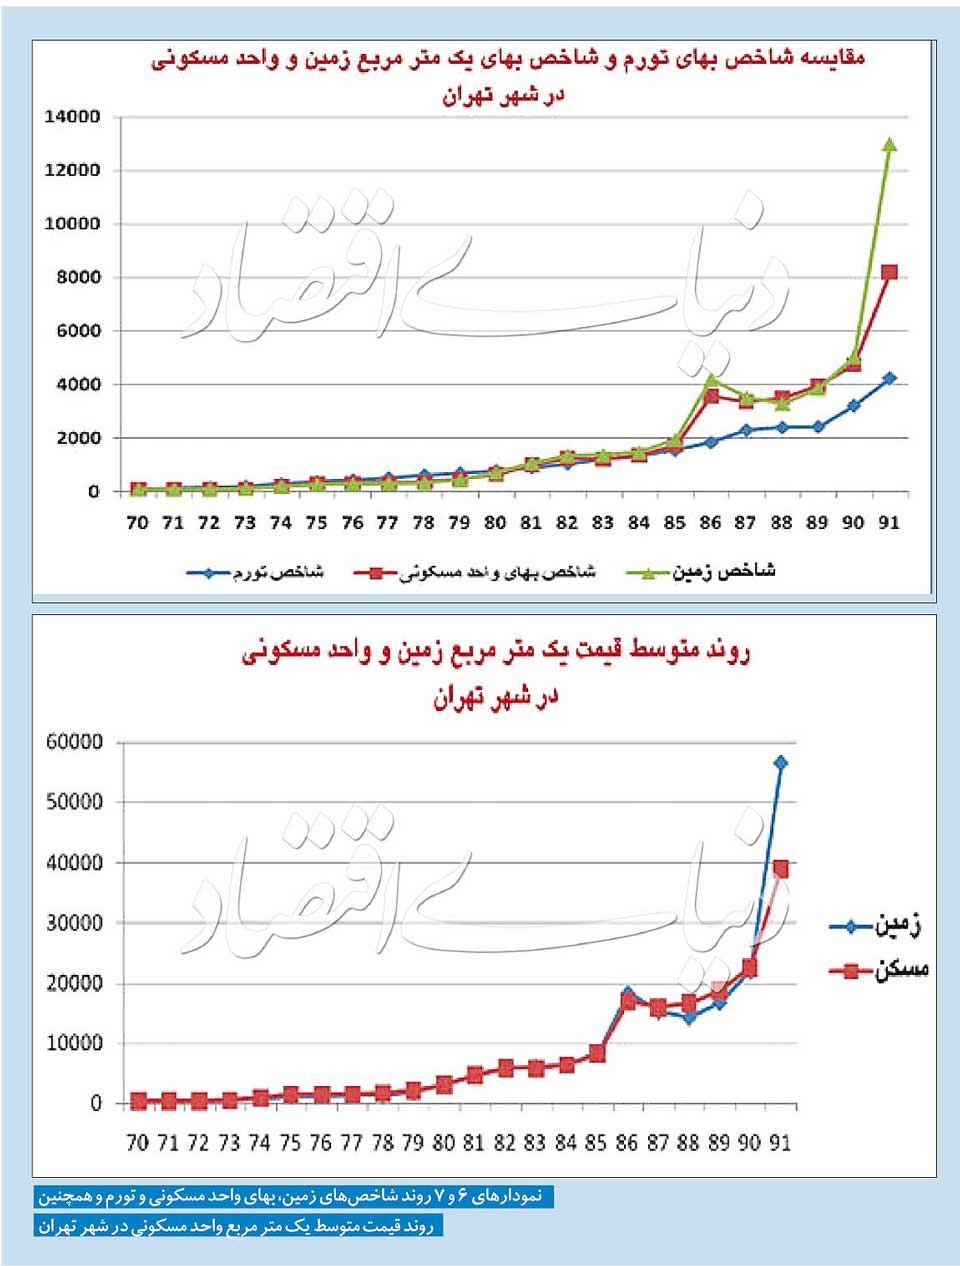 نمودار 6 و 7 - روند شاخص قیمتهای مسکن، بهای زمین و تورم همچنین روند قیمت متوسط هر یک مترمربع واحد مسکونی در تهران